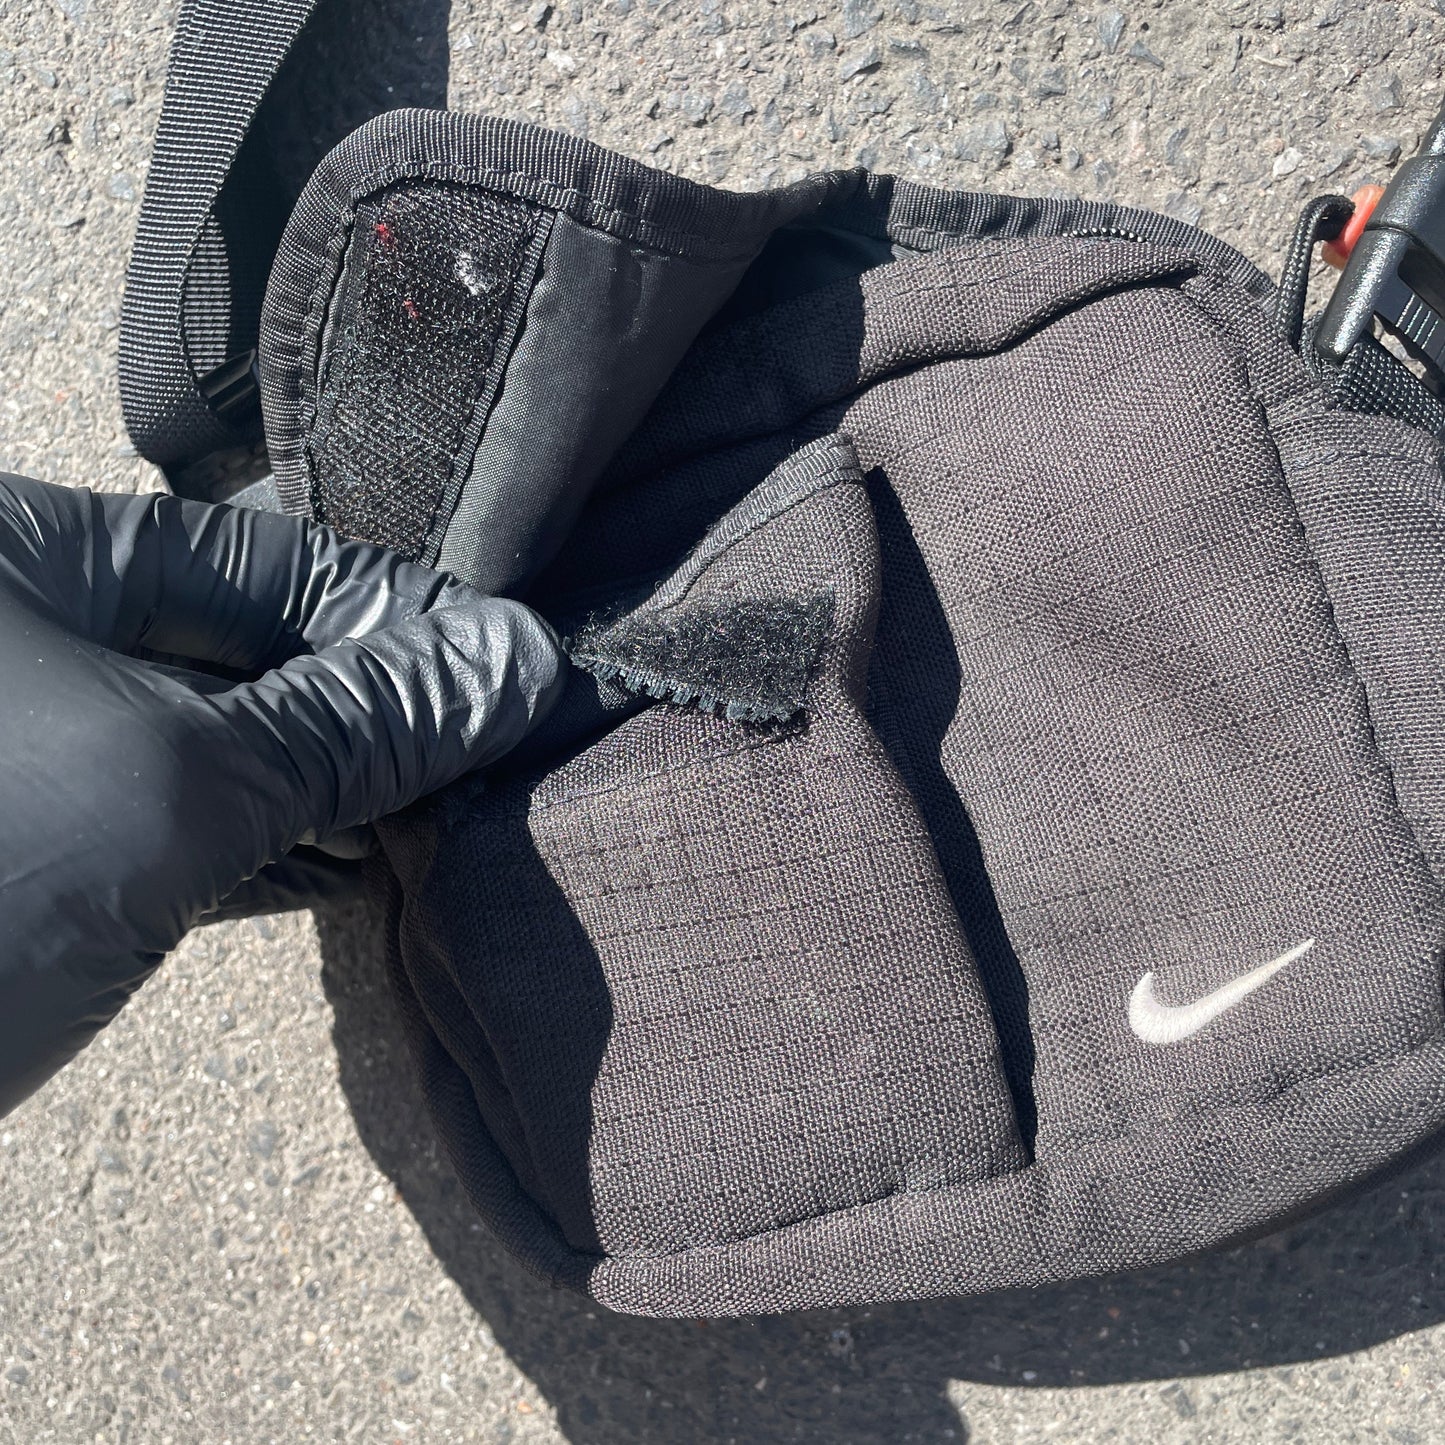 2000s Nike Bag